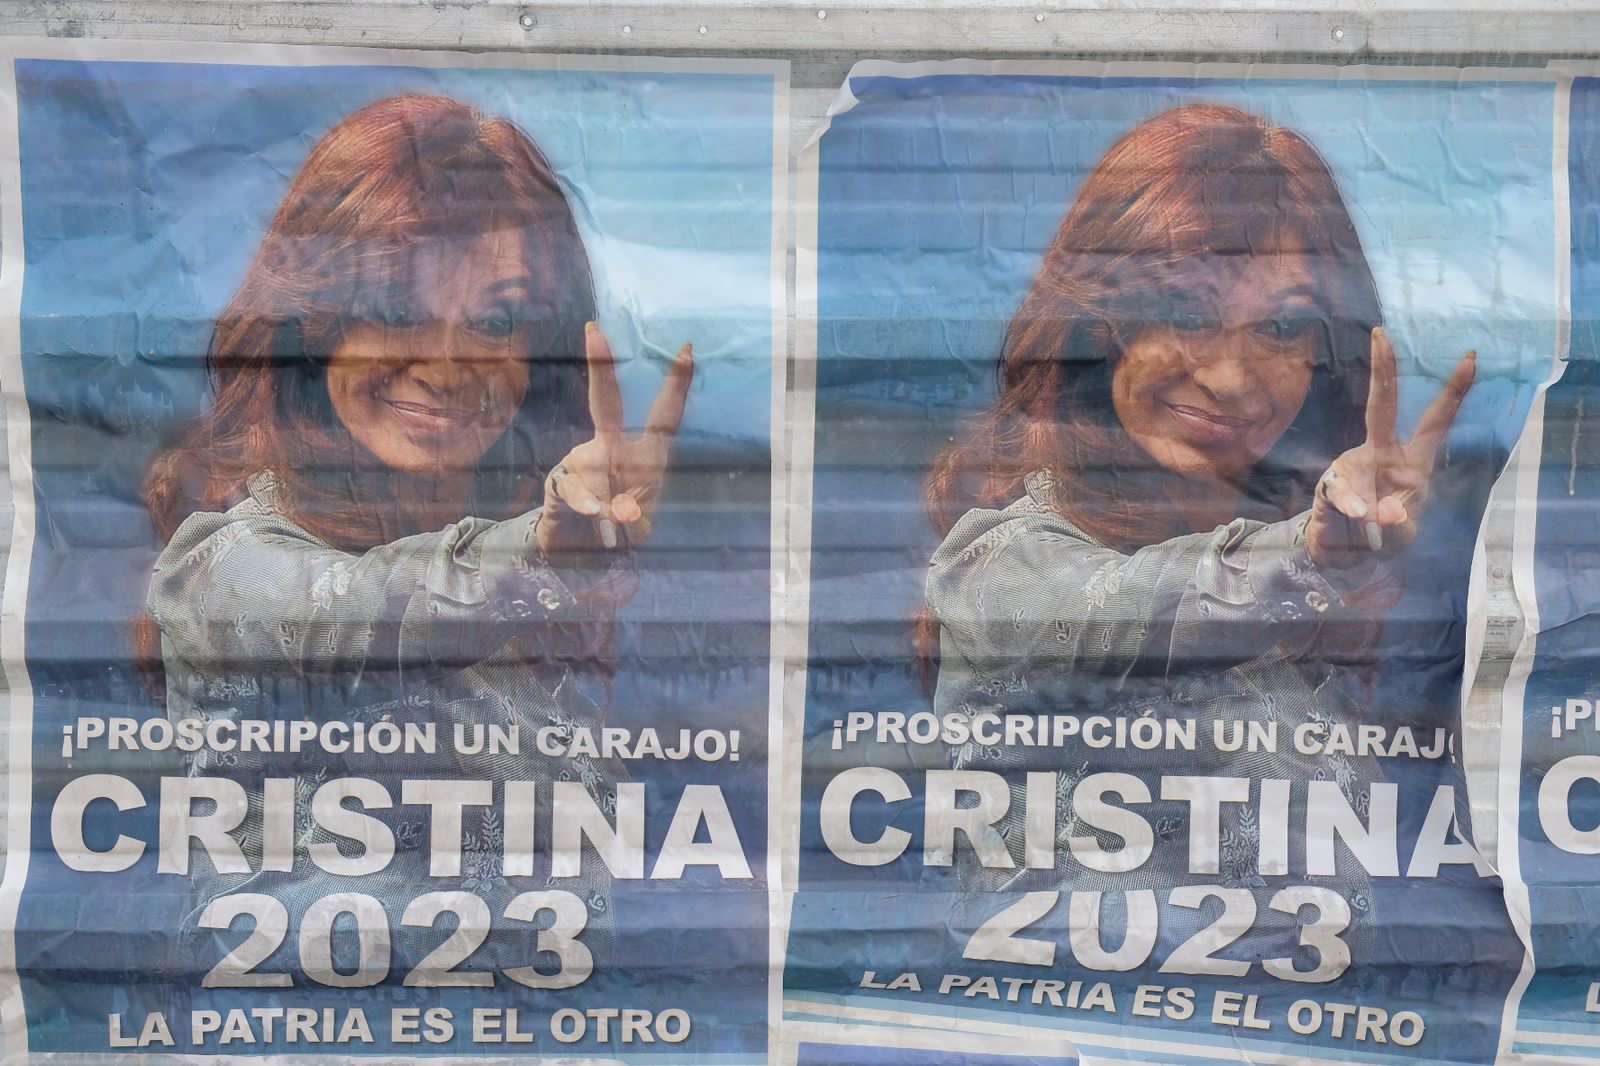 Afiches con la leyenda "¡Proscripción un carajo! Cristina 2023", aparecieron en la sede del PJ